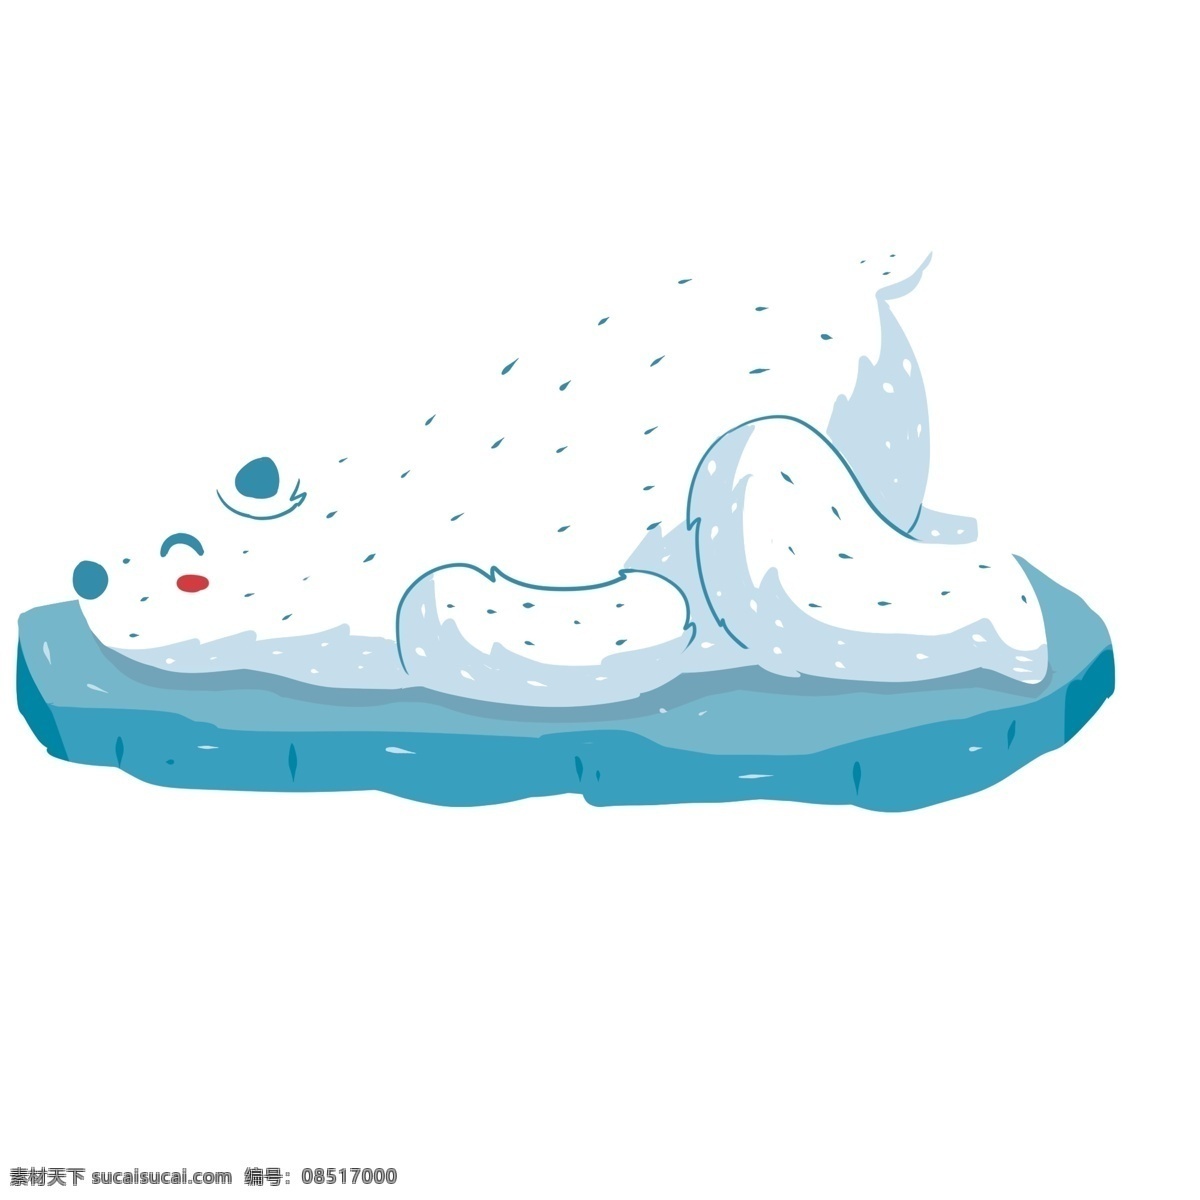 蓝色 浮冰 上 白色 卡通 北极熊 蓝色浮冰 浮冰北极熊